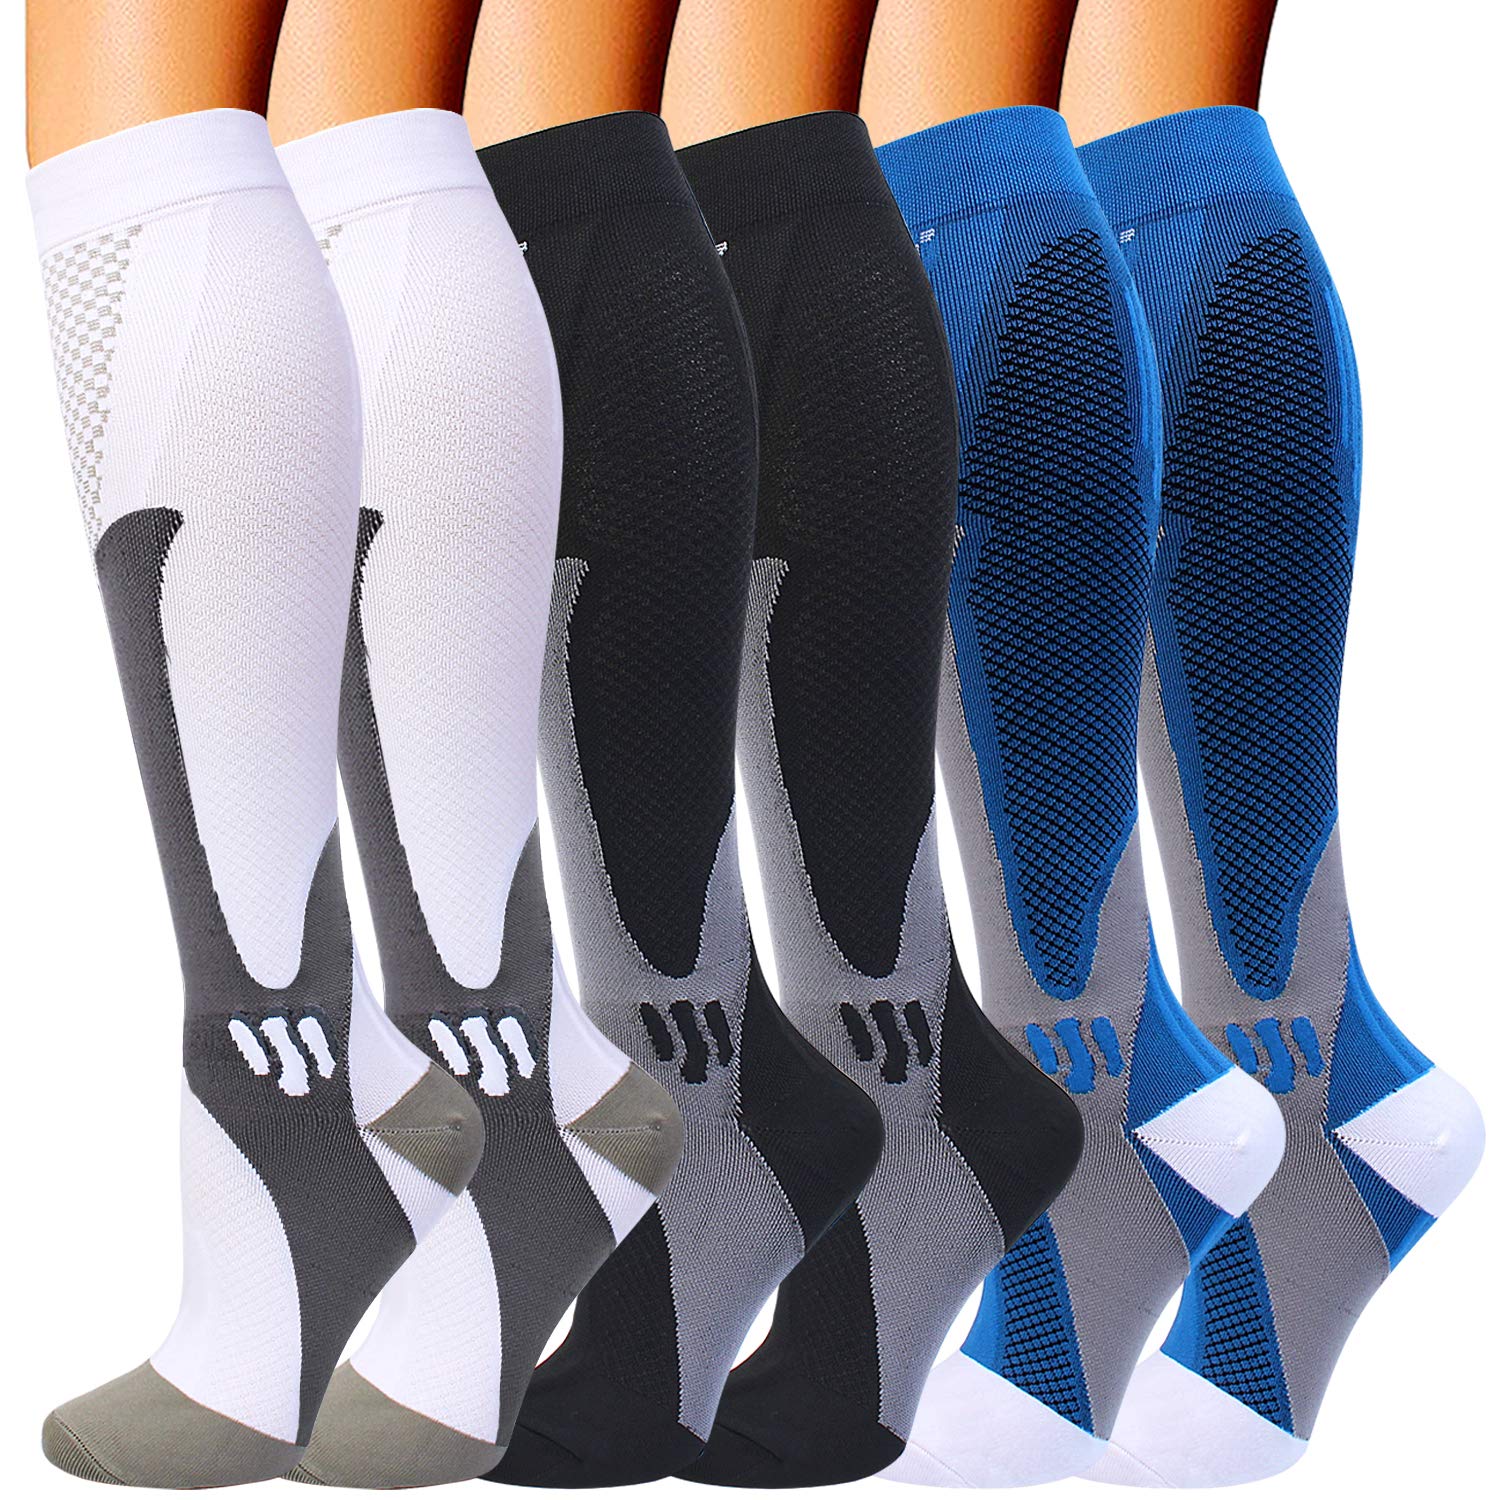 Copper Compression Socks 20-30mmHg Support Calf Leg India